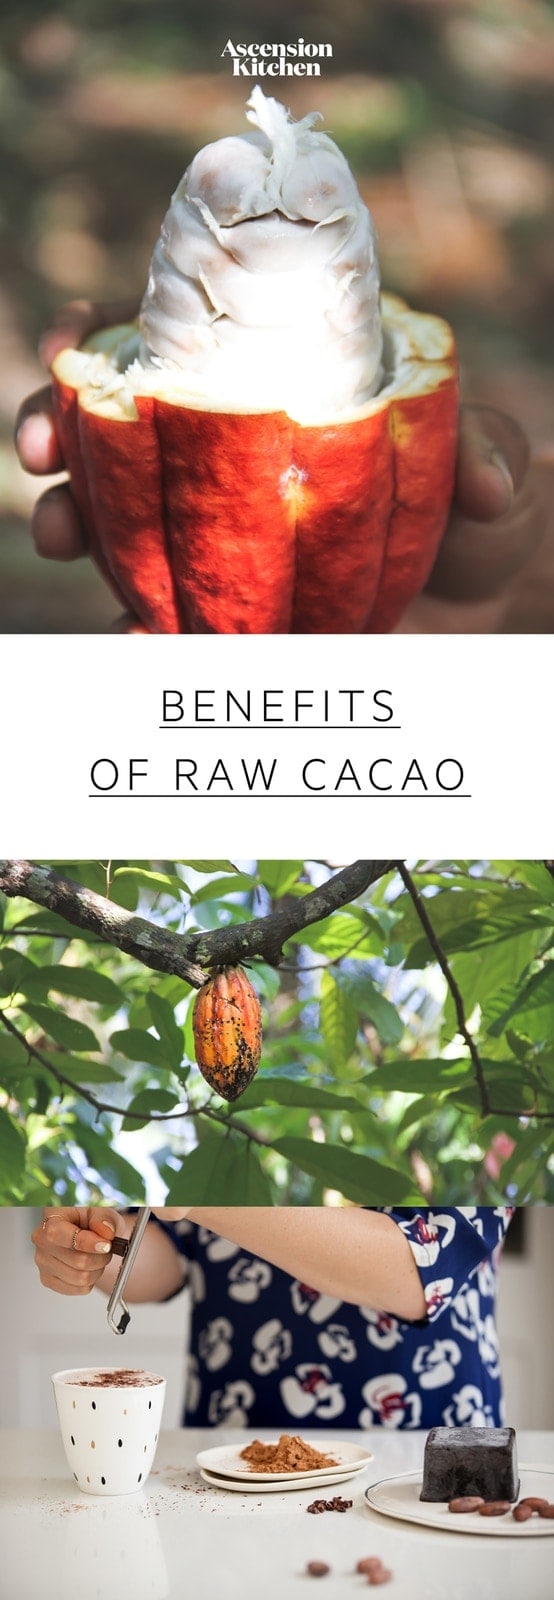 Ernährung Gesundheitliche Vorteile von Kakao: Erfahren Sie, wie sich roher Kakao von Kakao unterscheidet warum Kakao so vorteilhaft ist. #benefitscacao #cacaobenefits #cacaonutrition #cacaopowderbenefits #rawcacaopowder #cacaopowderrecipes #superfoods #AscensionKitchen